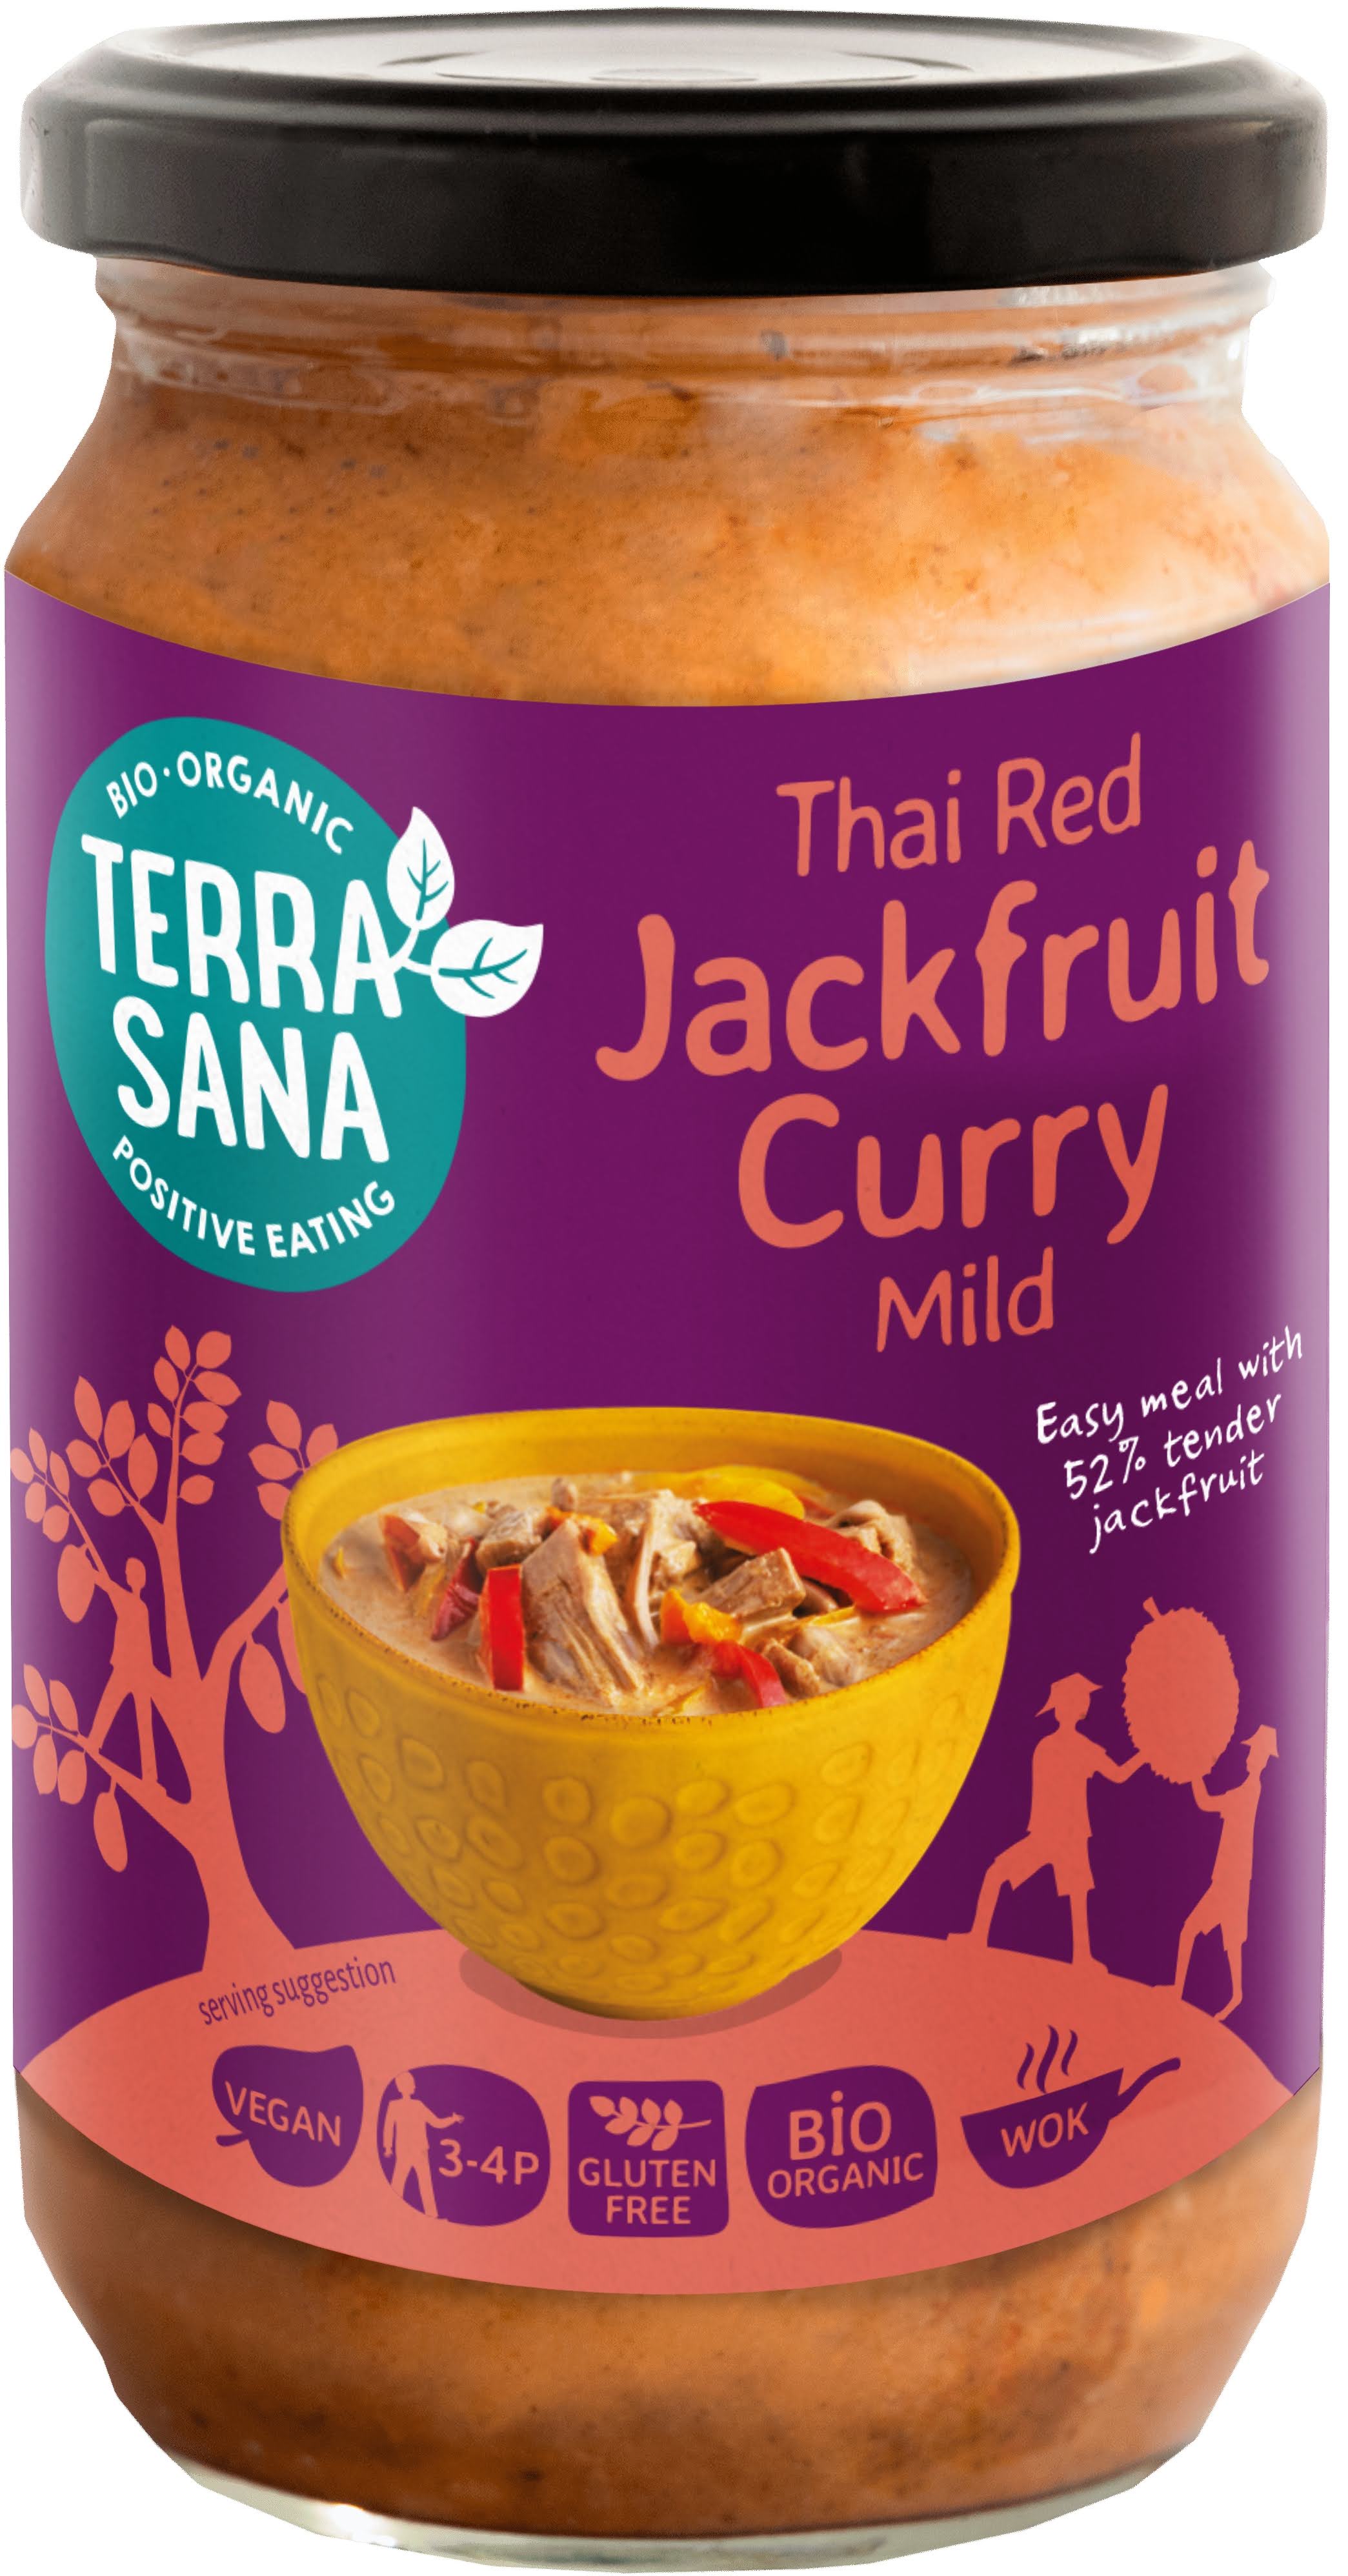 Rotes Thai-Curry mit Jackfrucht